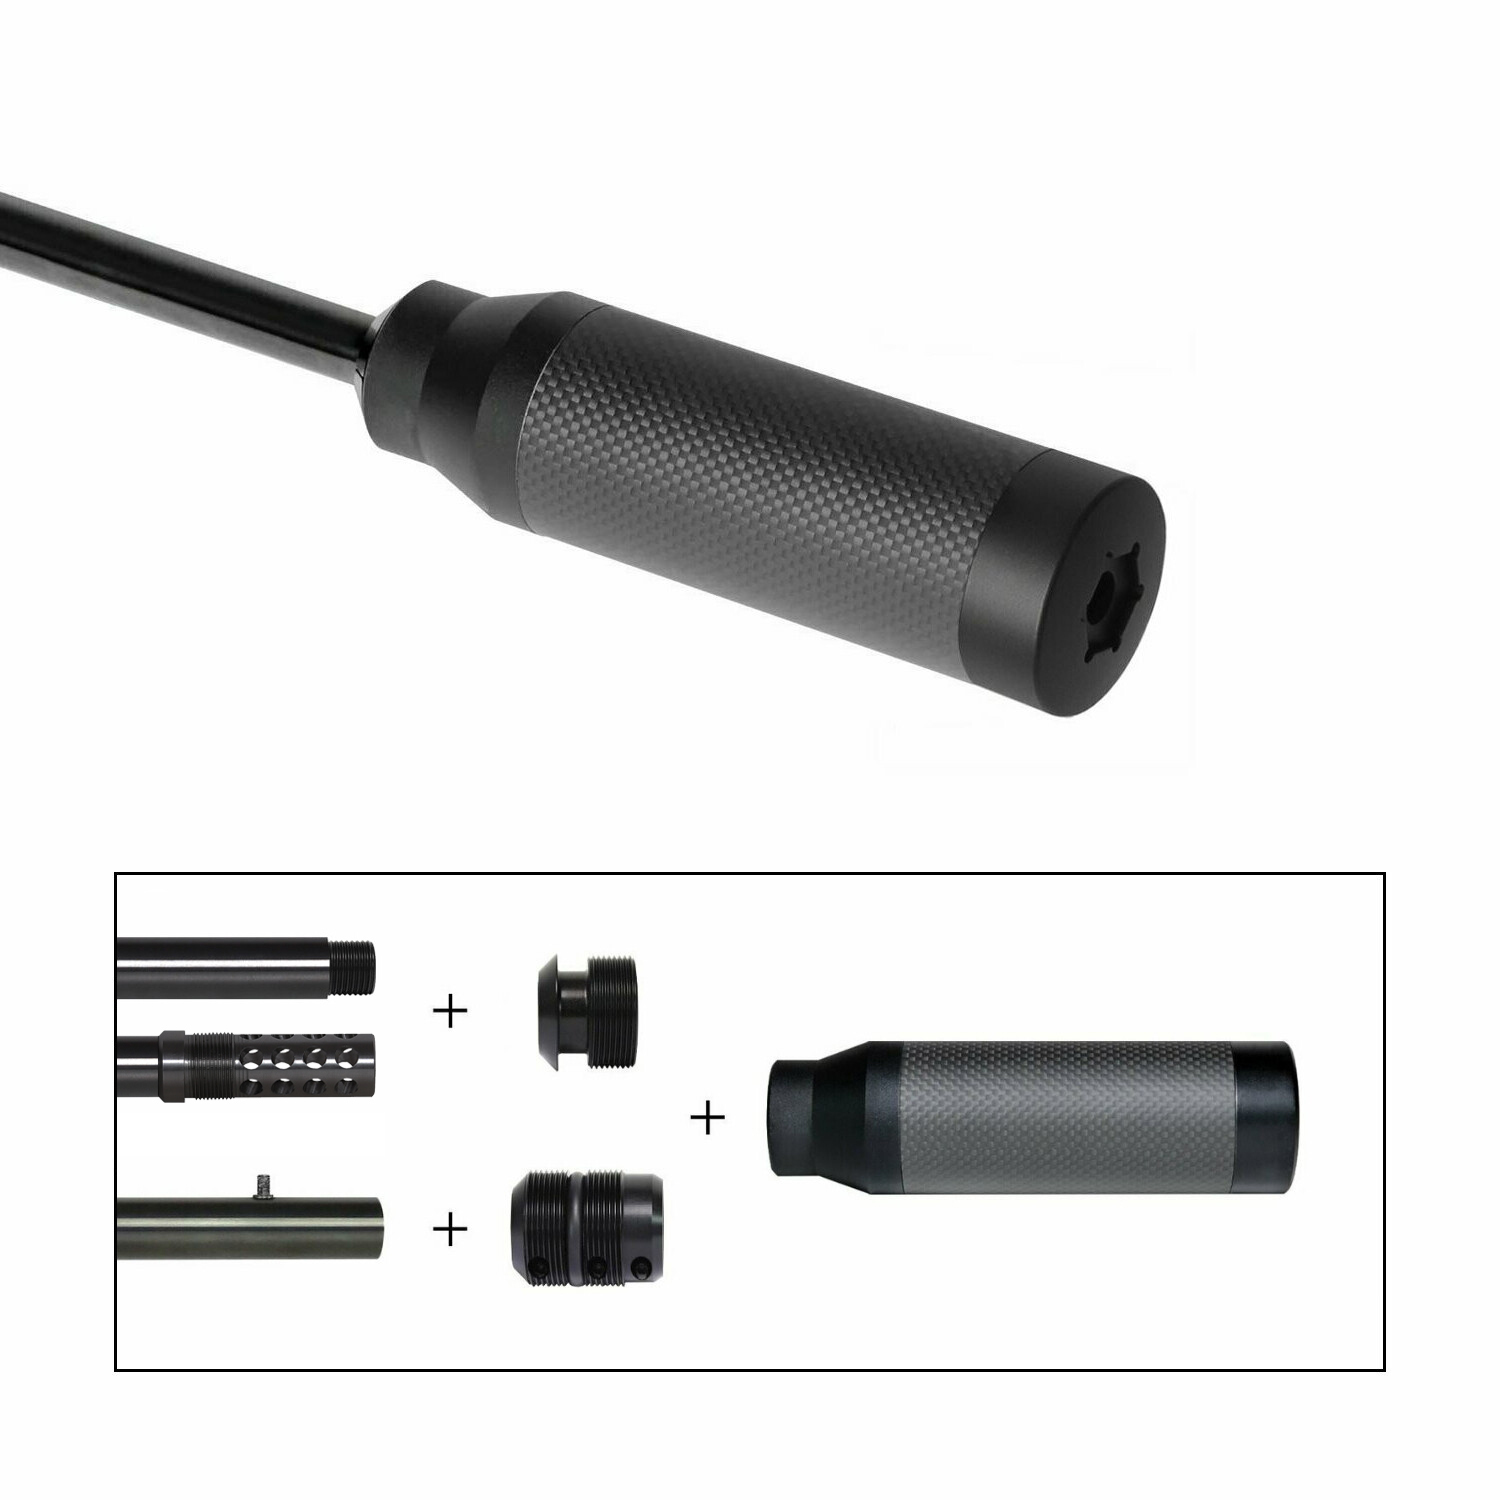 End-Barrel Schalldämpfer JAGD mit Universalaufnahme für Gewinde- oder Klemm- Adapter - Ideal für Kaliber bis 7,62